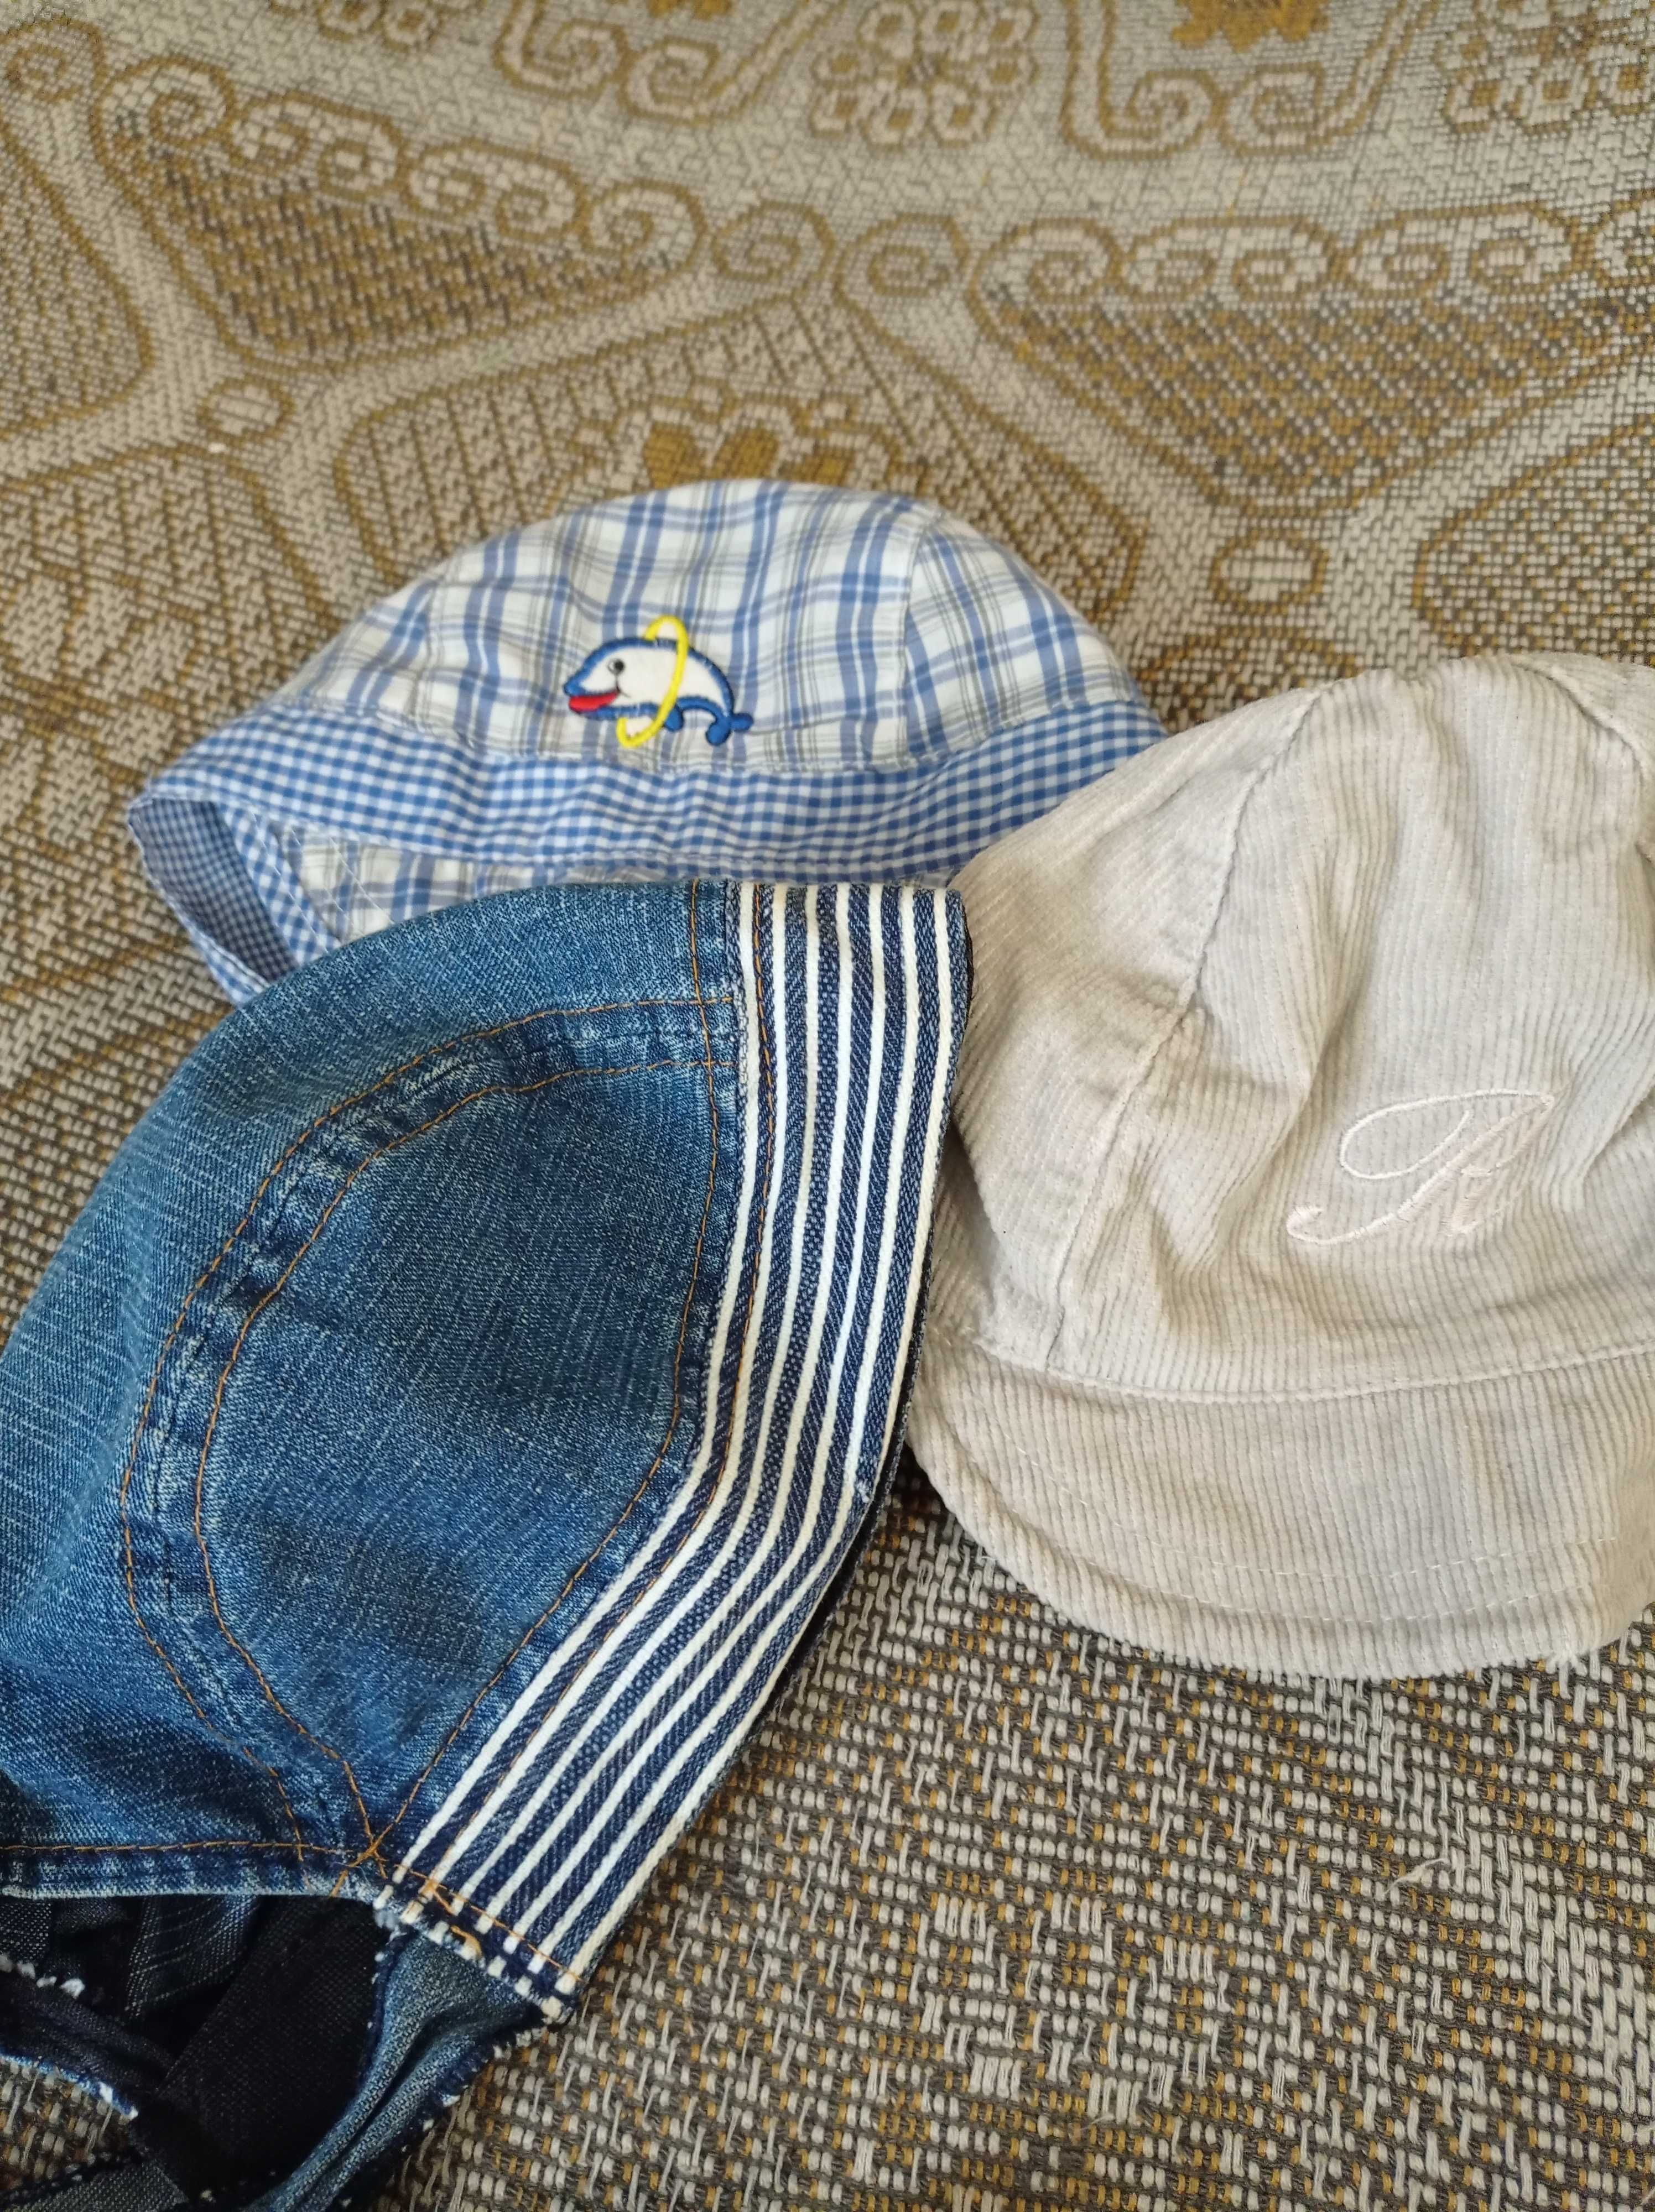 Одежда для мальчика 1-2 года, пакет летней и теплой одежды